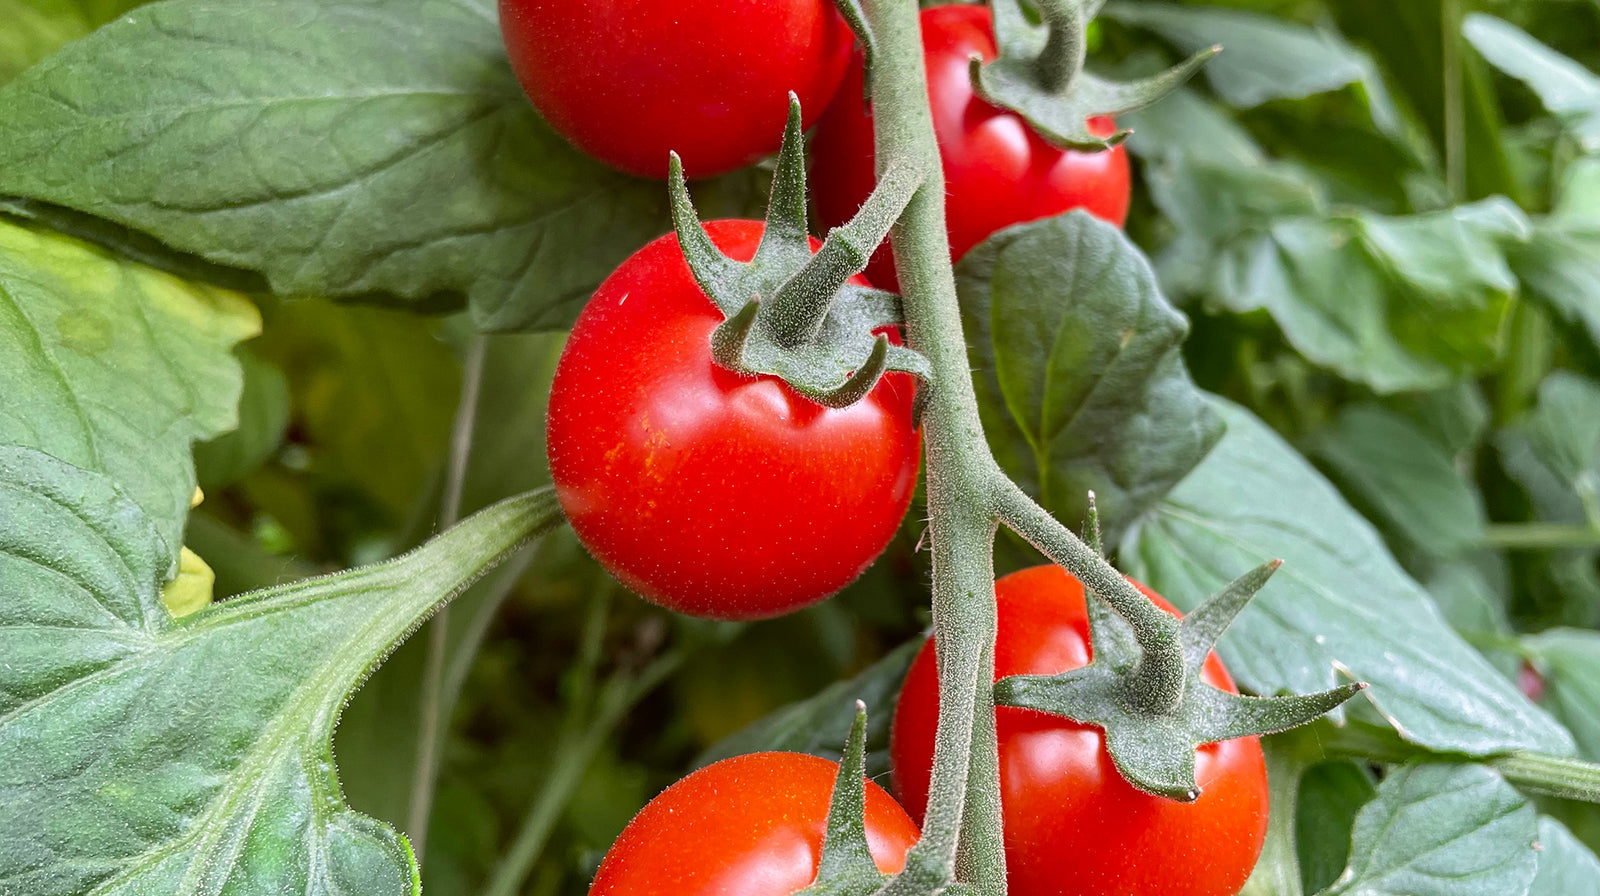 La tomate, le légume de l’été aux nombreuses qualités